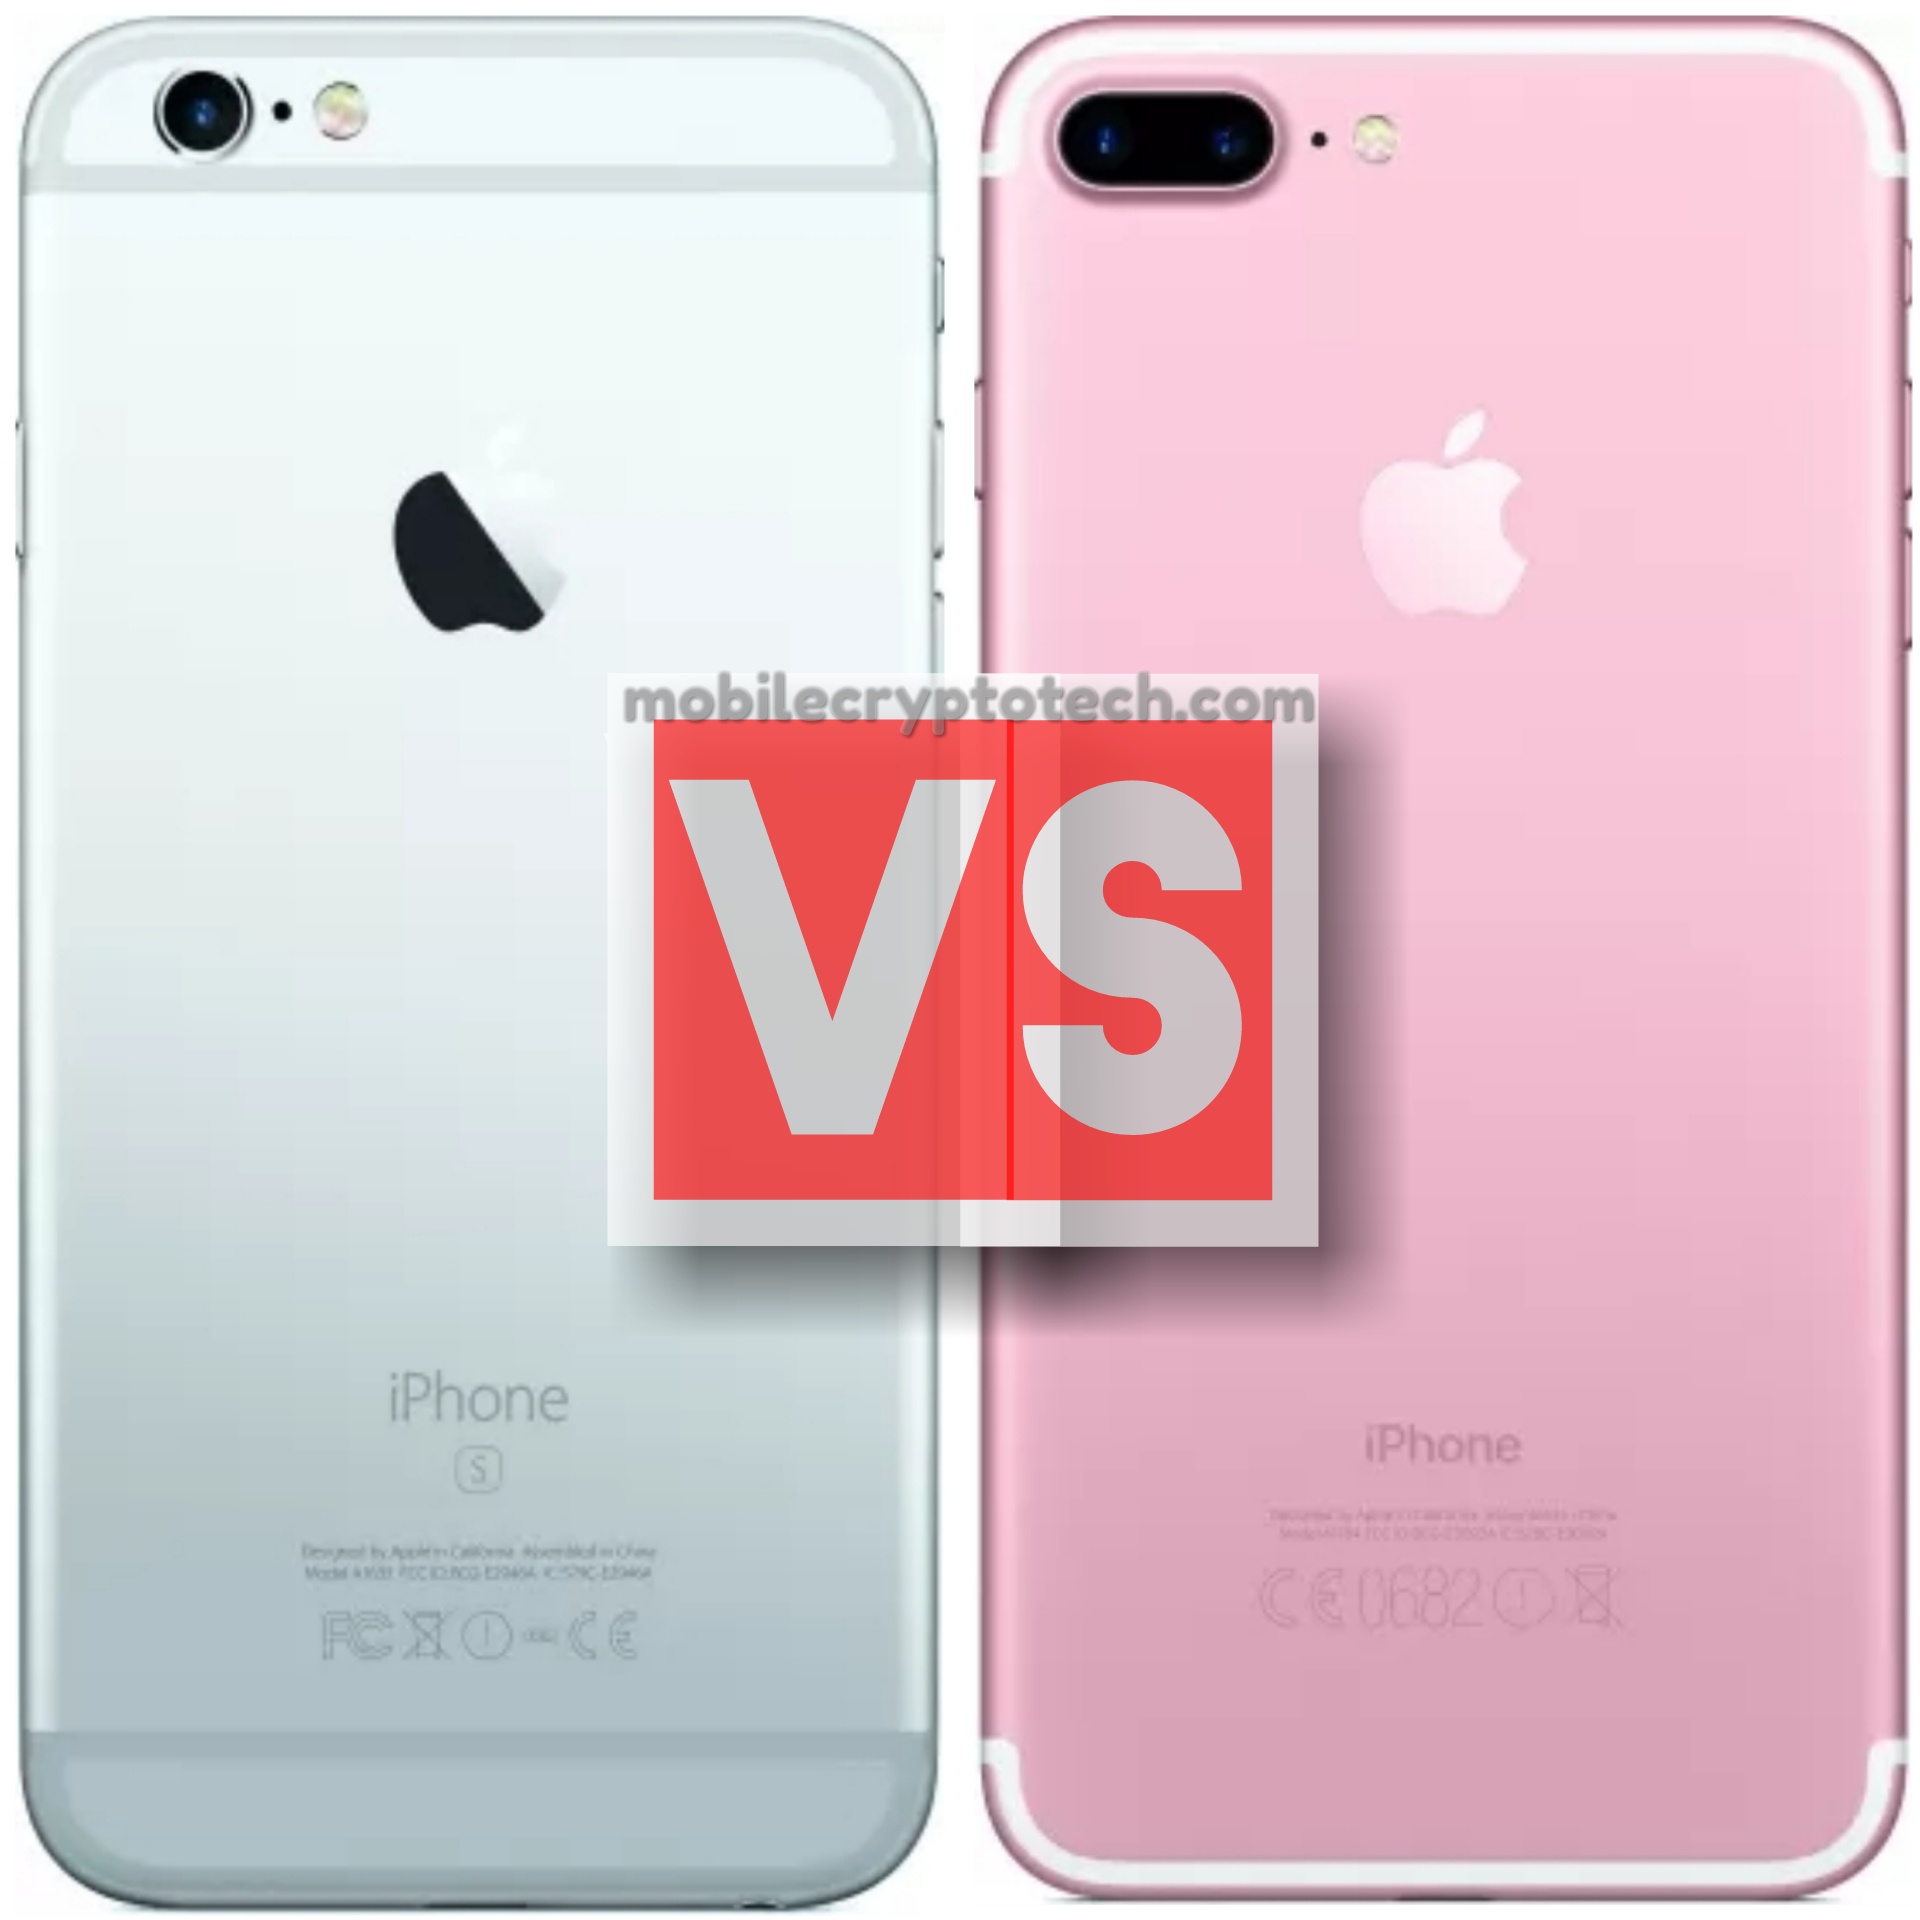 Apple iPhone 6S Plus Vs iPhone 7 Plus